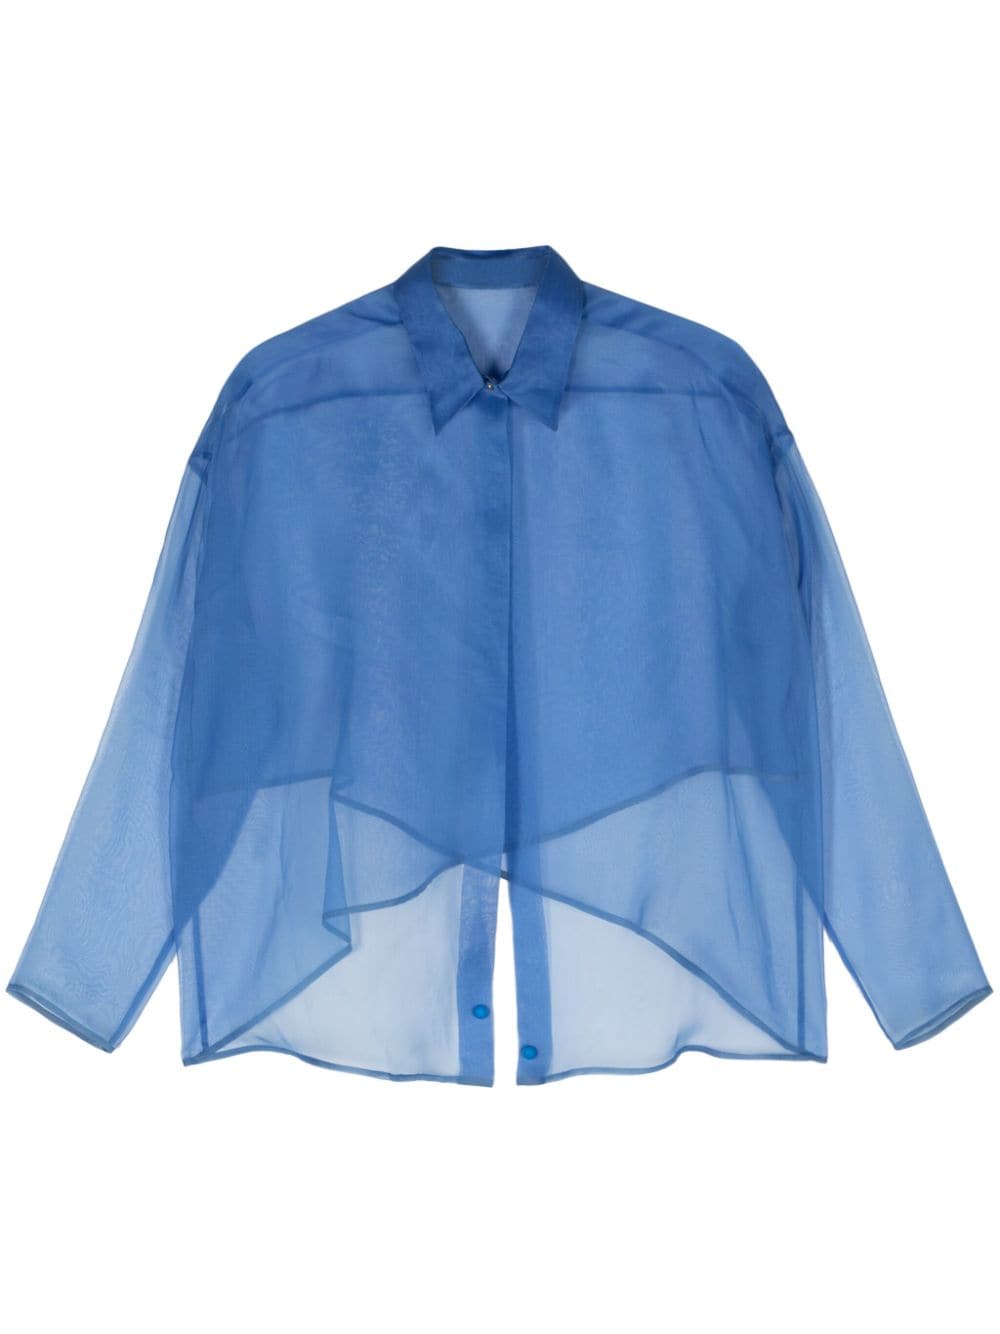 Giorgio Armani open-front sheer shirt - Blue von Giorgio Armani